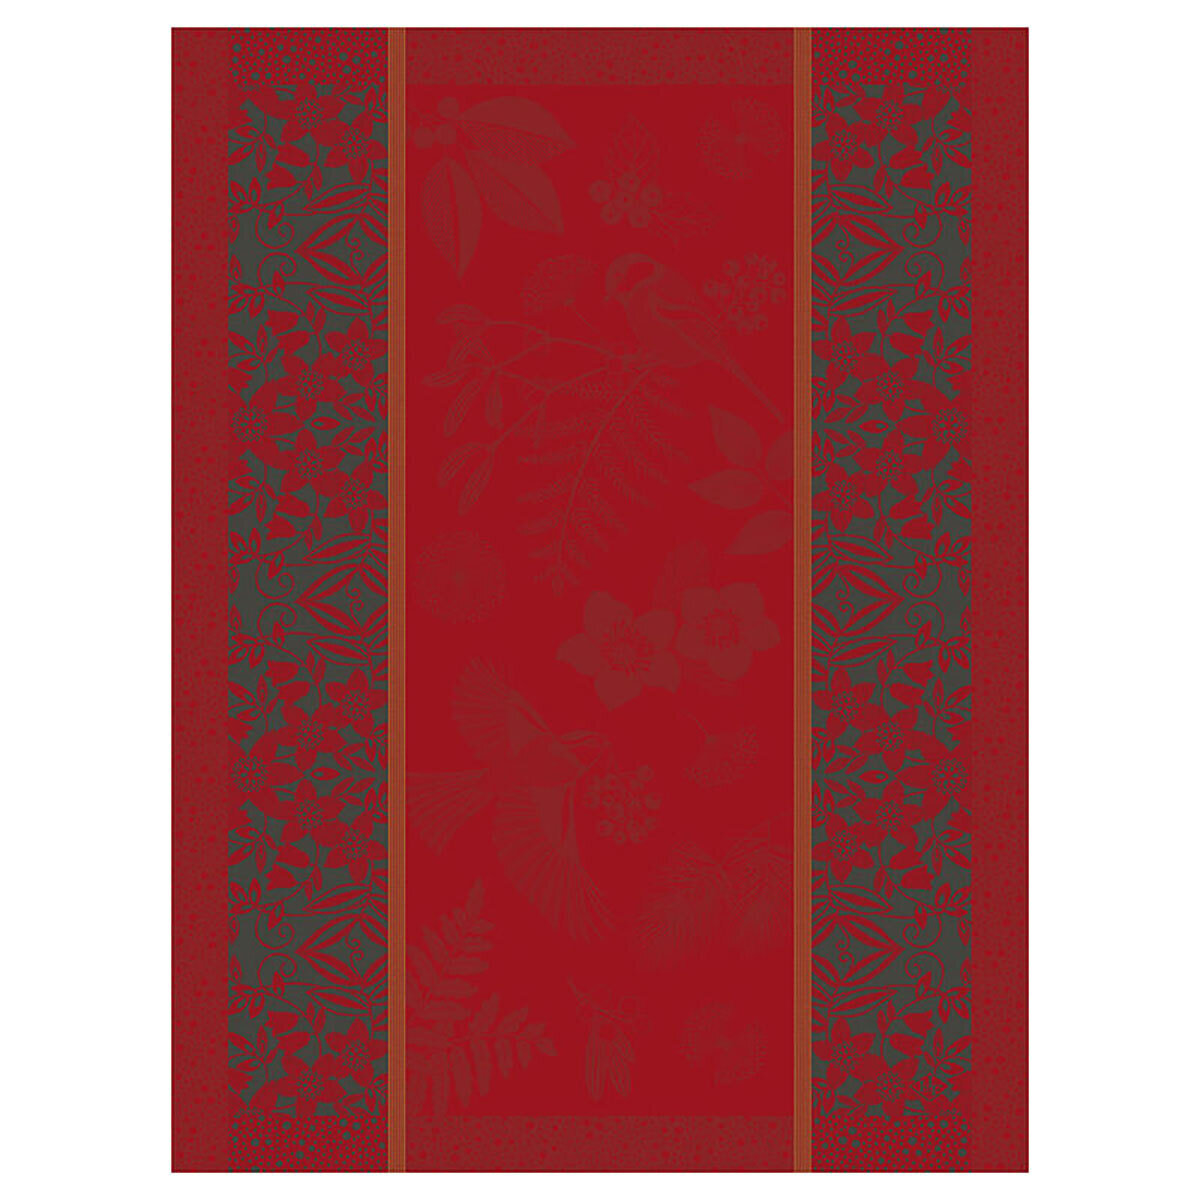 Le Jacquard Francais Tea Towel Poesie D'Hiver Red 100% Cotton 24 x 31 Inch 27733 Set of 4